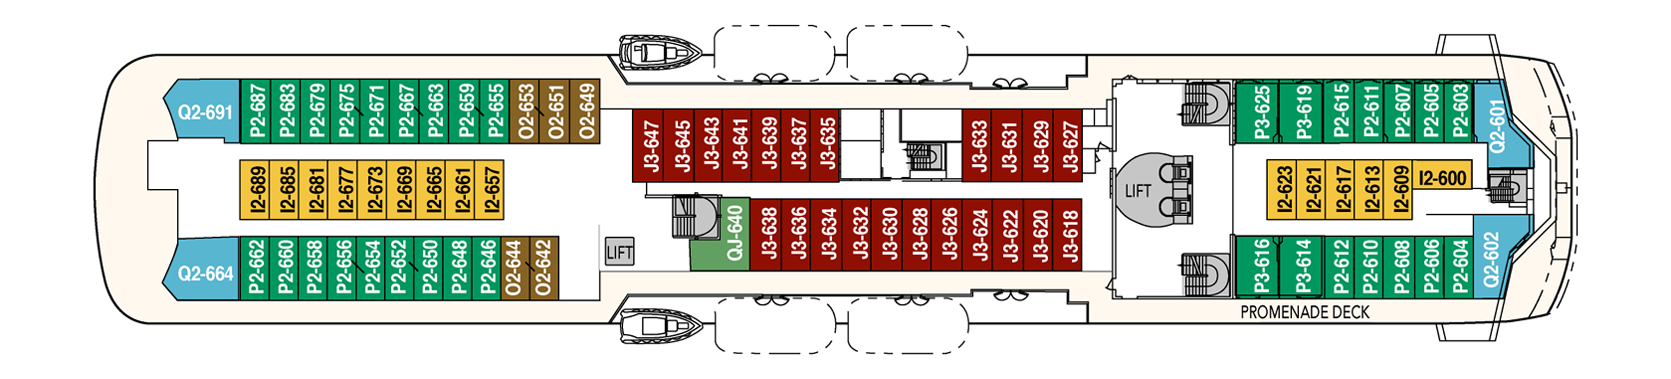 1548636360.7843_d265_Hurtigruten MS Trollfjord Deck Plans Deck 6.png